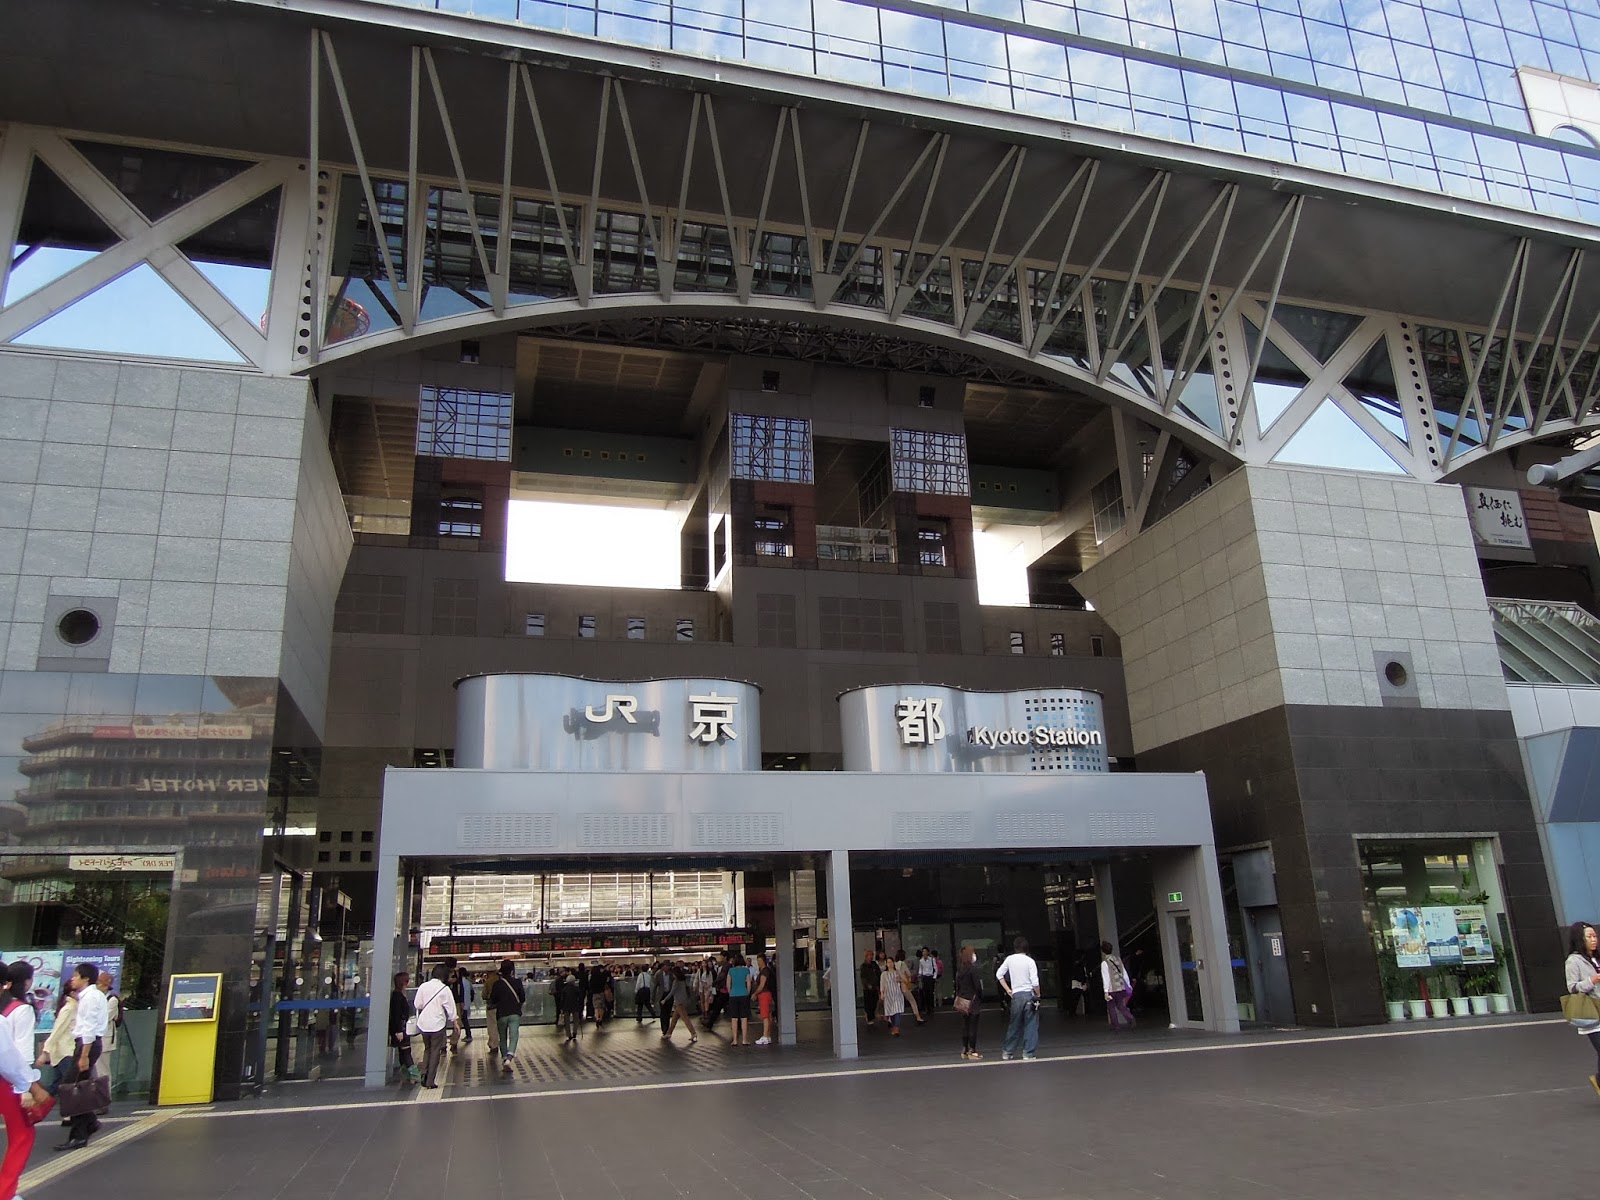 京都市、烏丸線ホームの列車案内表示器を更新へ - 鉄道コム